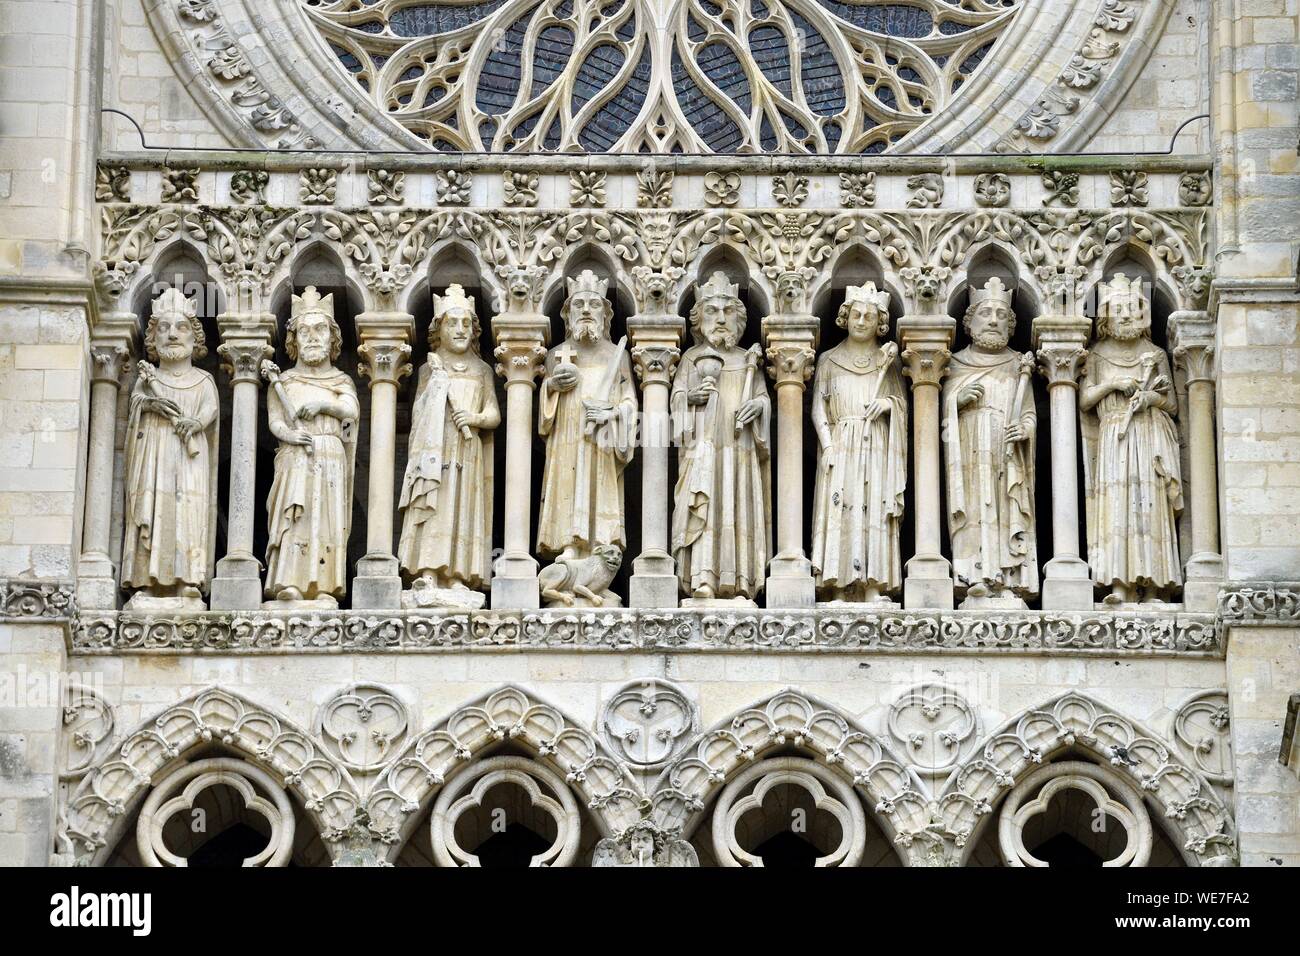 Francia, Somme, Amiens, la cattedrale di Notre Dame, gioiello dell'arte gotica, classificato come patrimonio mondiale dall'UNESCO, la facciata occidentale, galleria delle statue dei re sopra il 3 porches Foto Stock